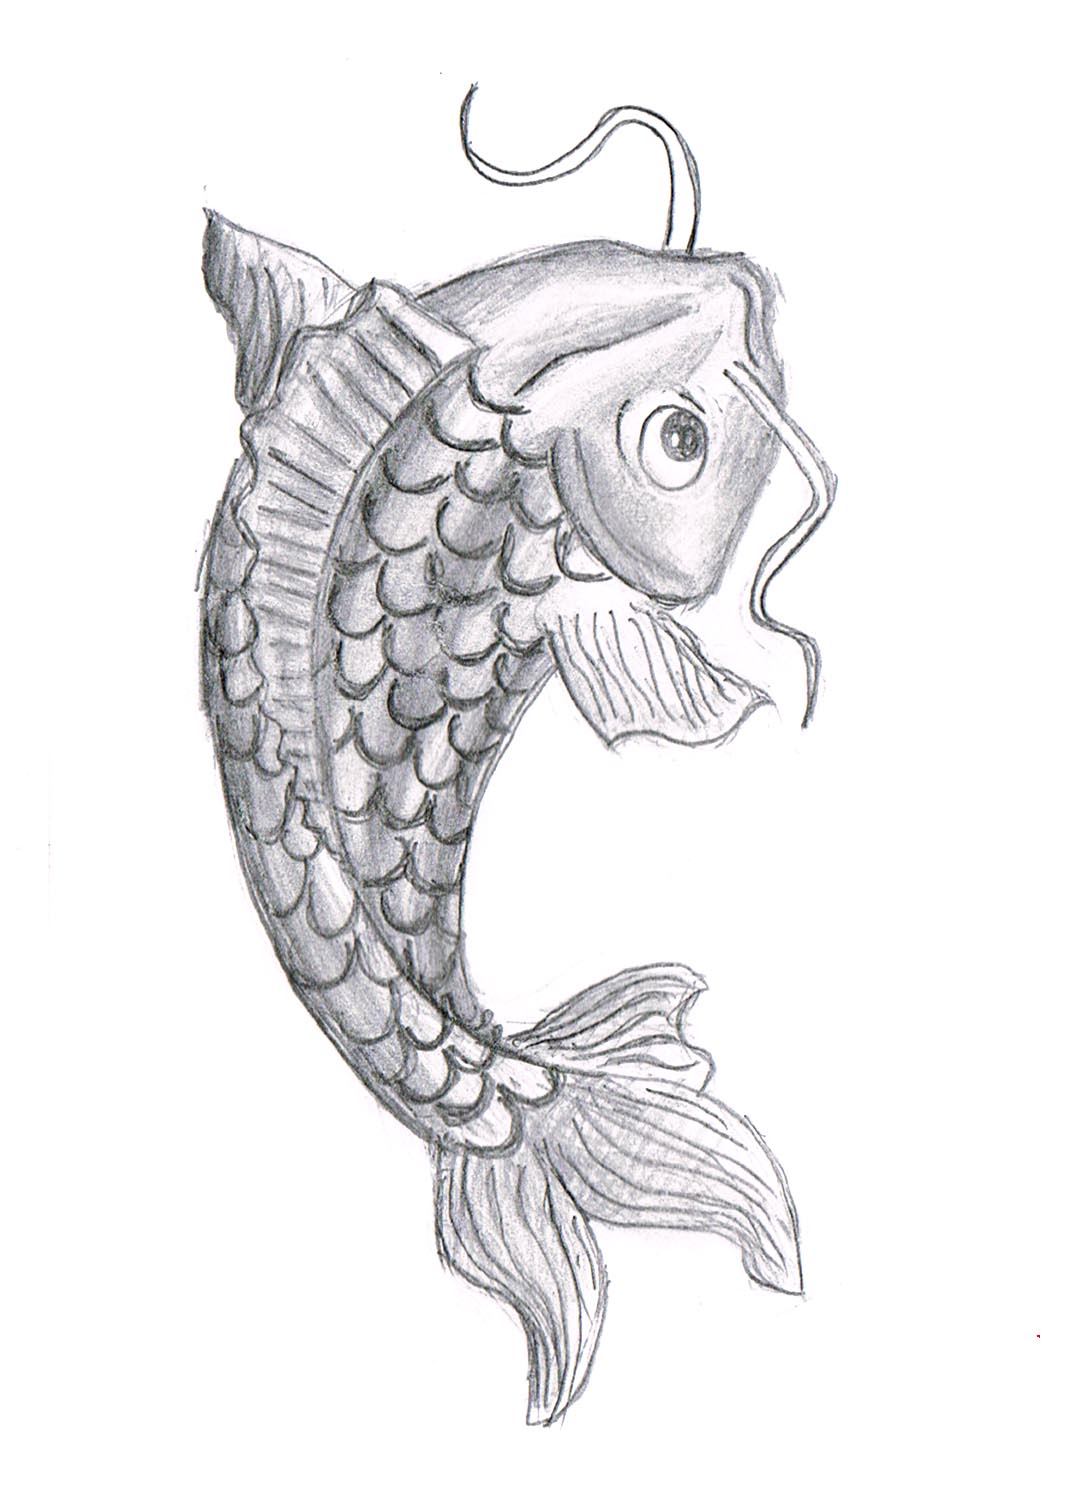 Koi Fish Drawings In Pencil - Gallery